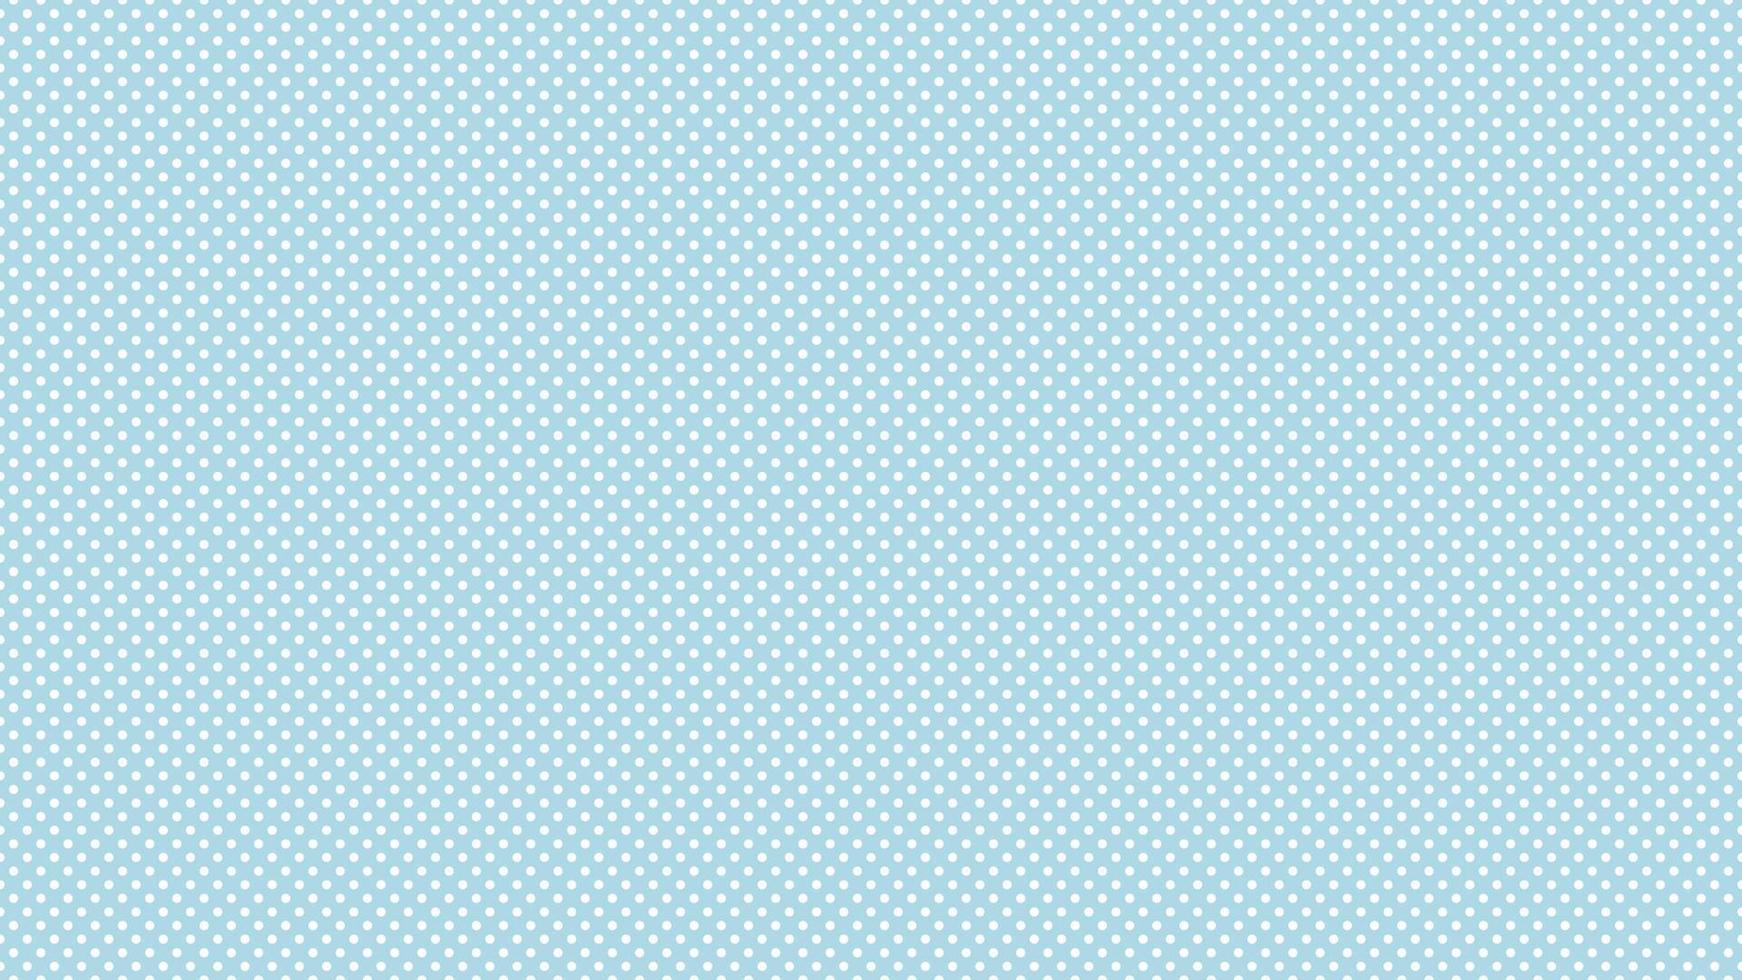 bianca colore polka puntini al di sopra di leggero blu sfondo vettore